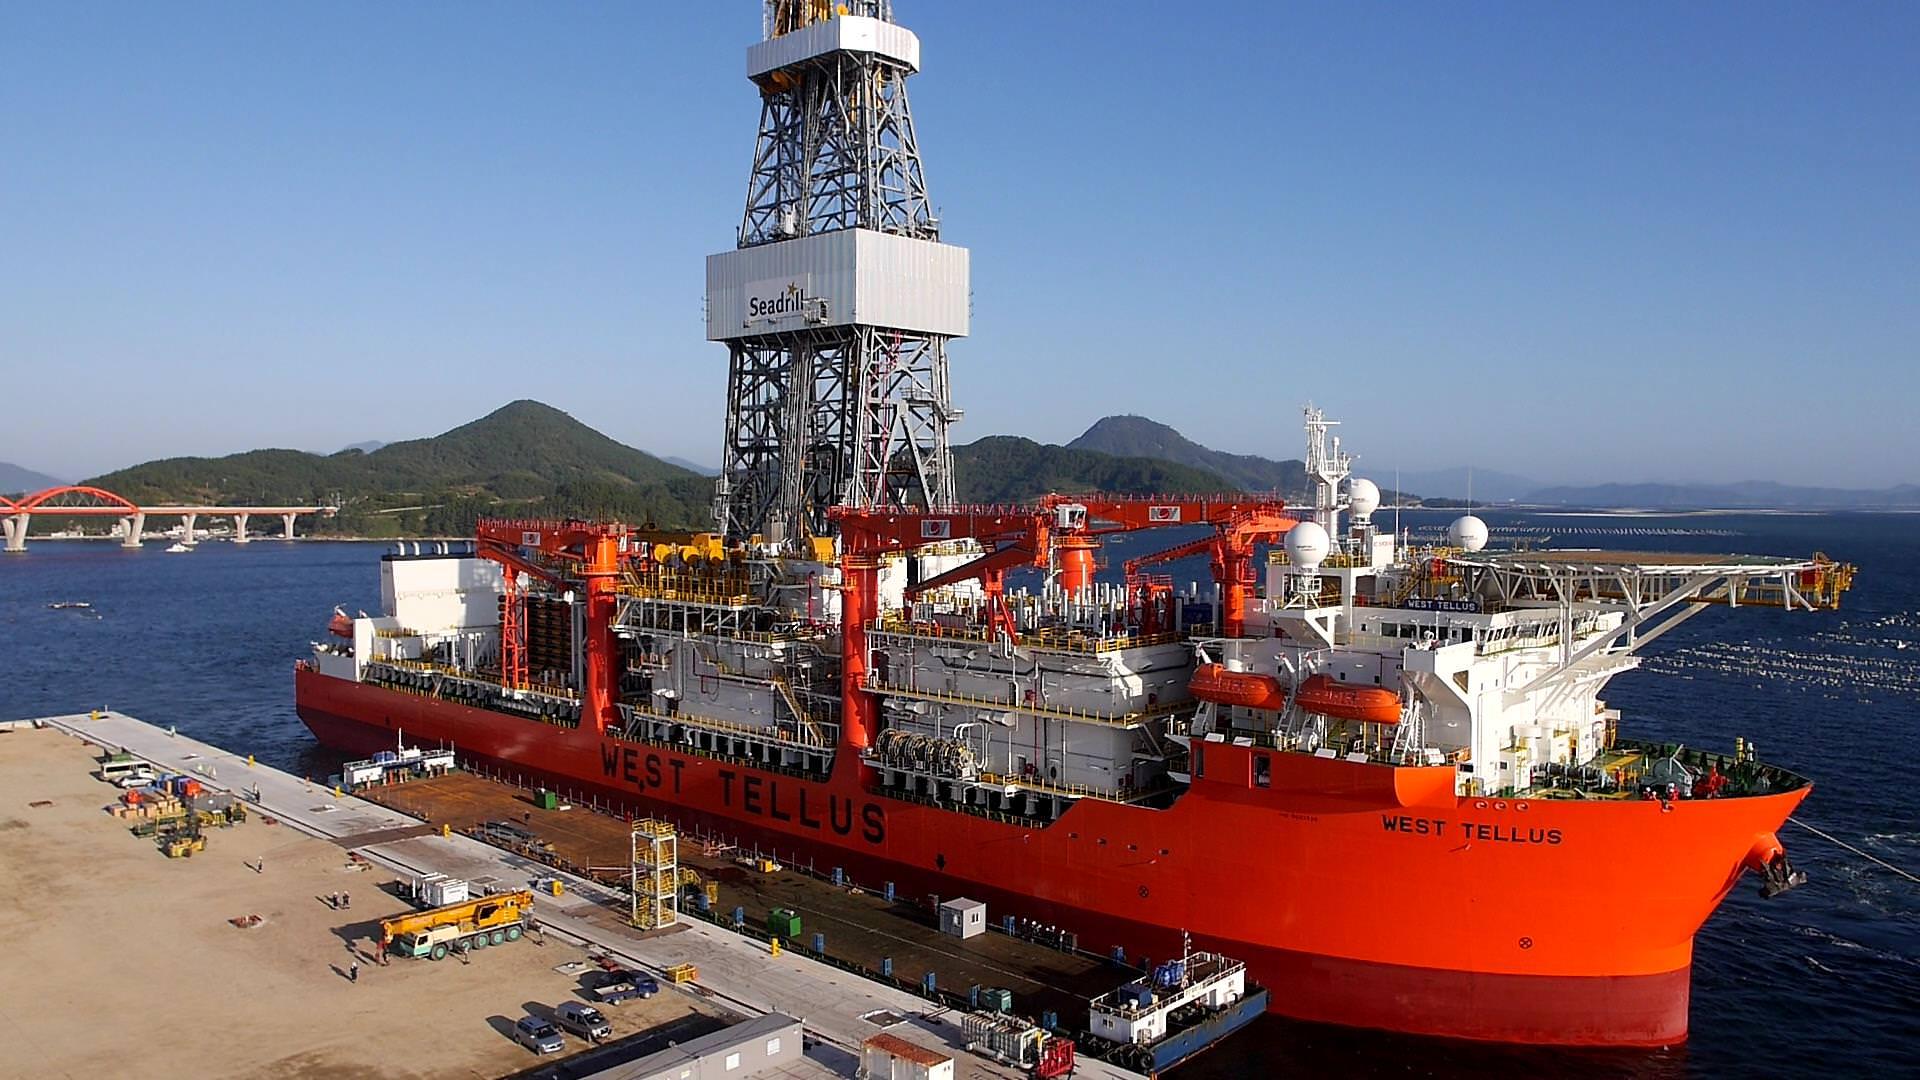 Seadrill com vagas offshore em processo seletivo oficial no Rio de Janeiro